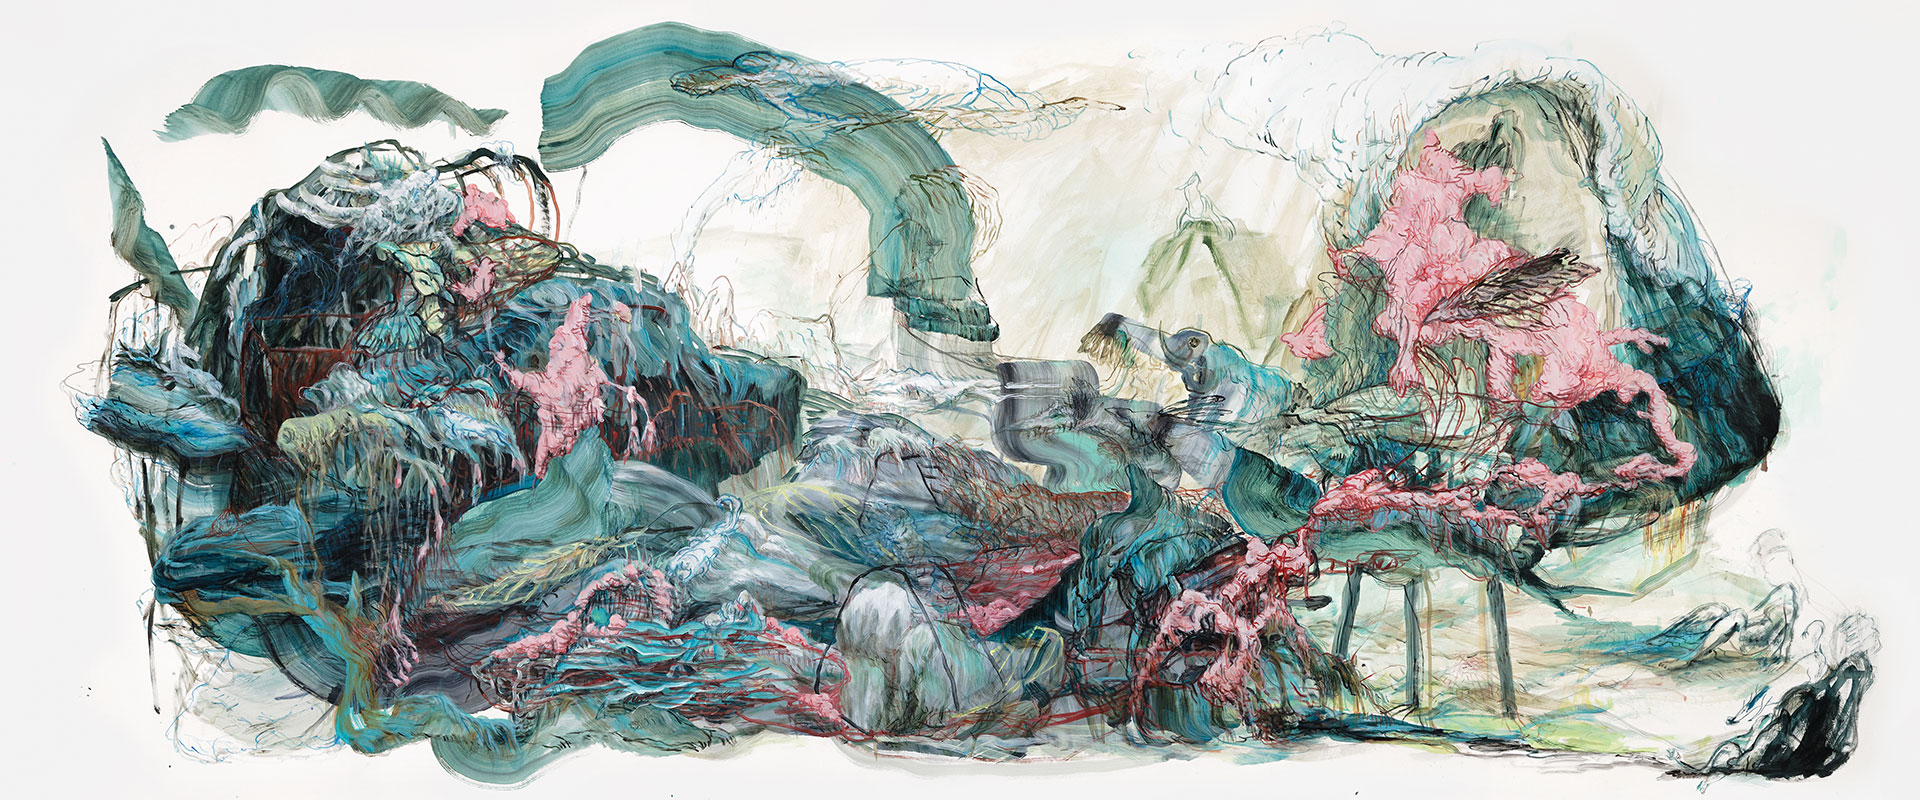 Terribles jardins - 2019 - Acrylique sur papier marouflé sur toile - 125 x 300 cm © A. Mole